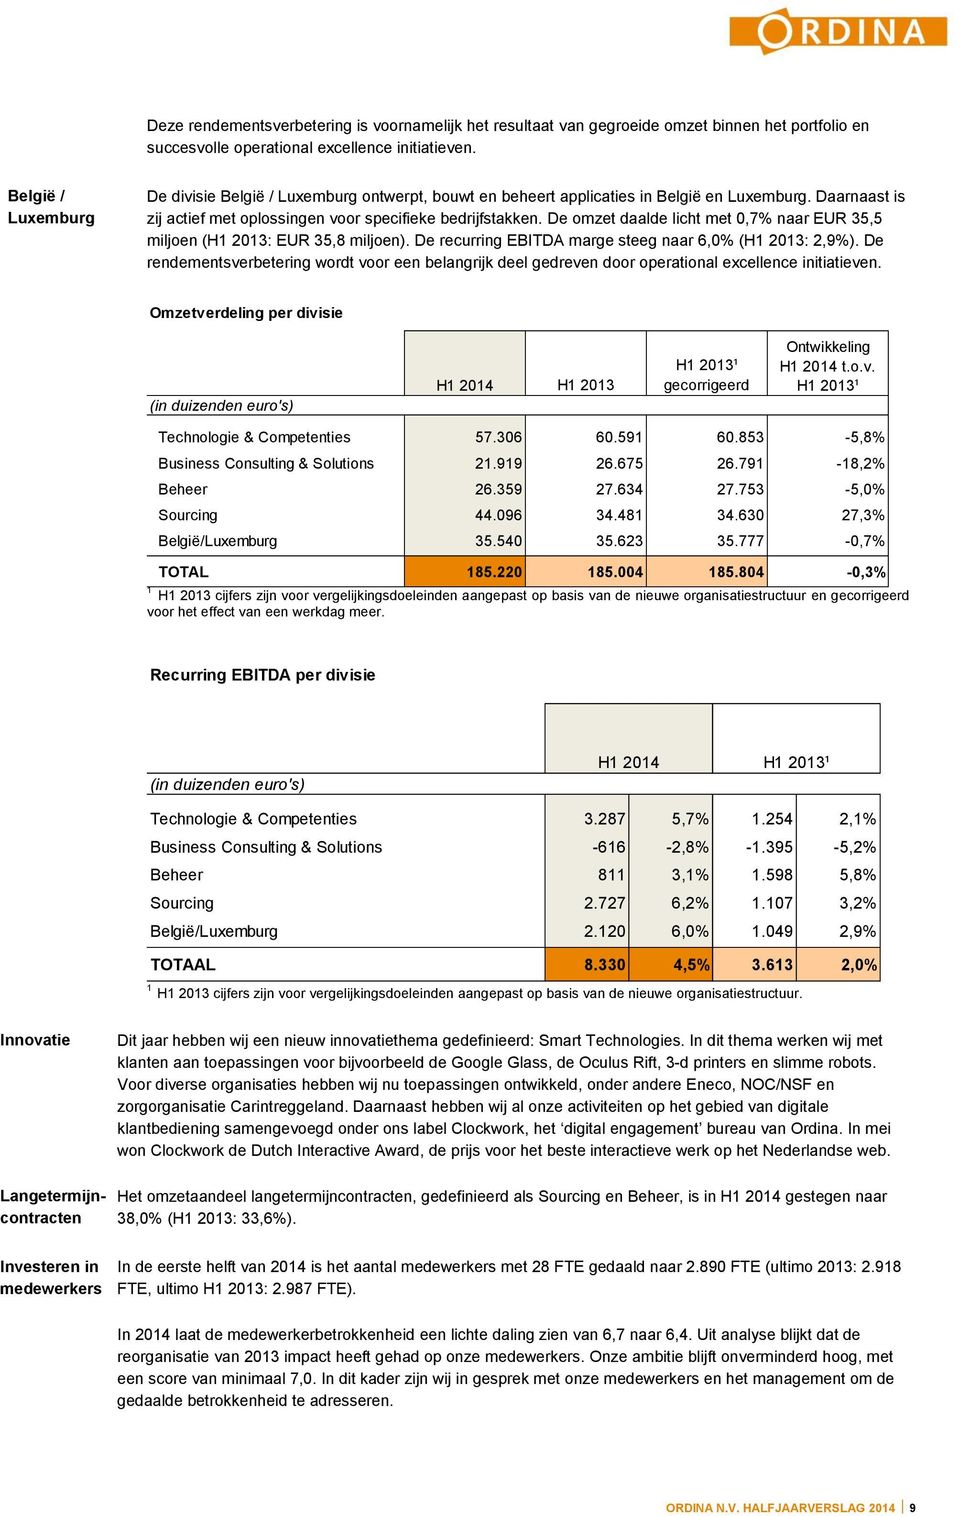 De omzet daalde licht met 0,7% naar EUR 35,5 miljoen (H1 2013: EUR 35,8 miljoen). De recurring EBITDA marge steeg naar 6,0% (H1 2013: 2,9%).